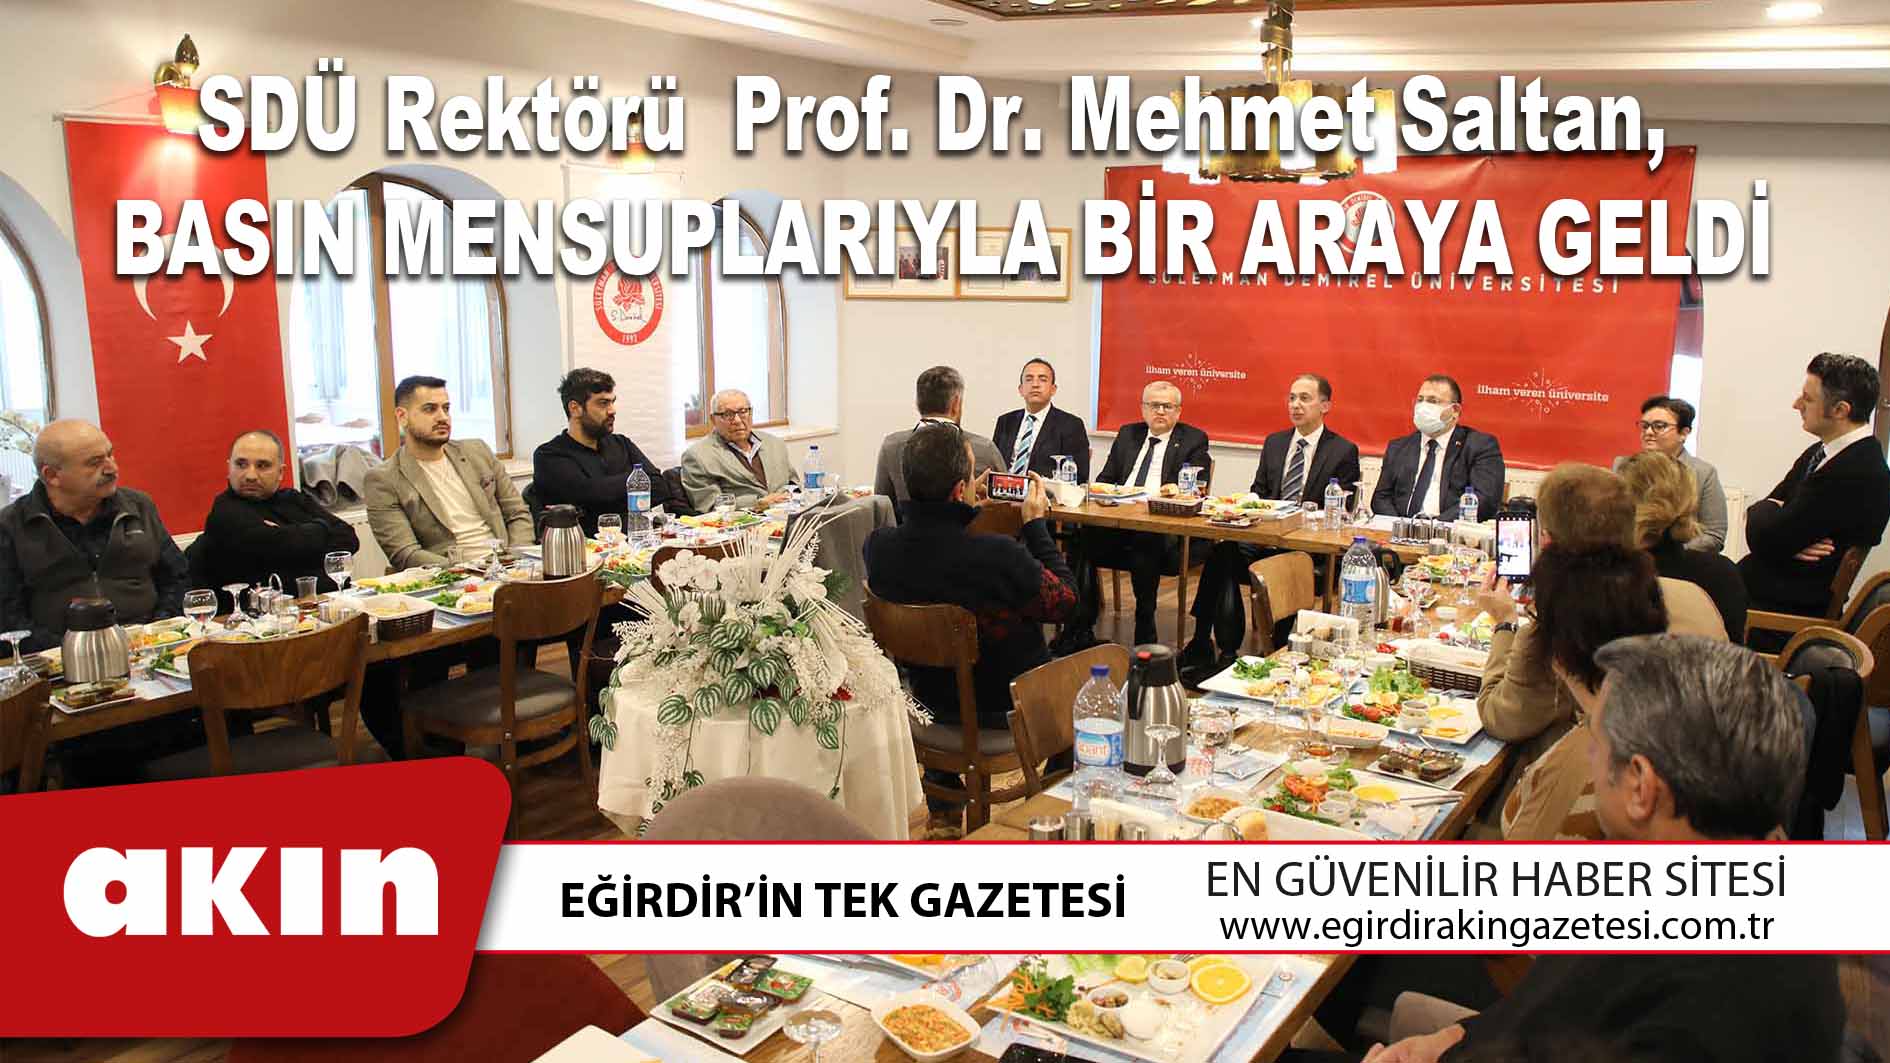 SDÜ Rektörü  Prof. Dr. Mehmet Saltan, Basın Mensuplarıyla Bir Araya Geldi